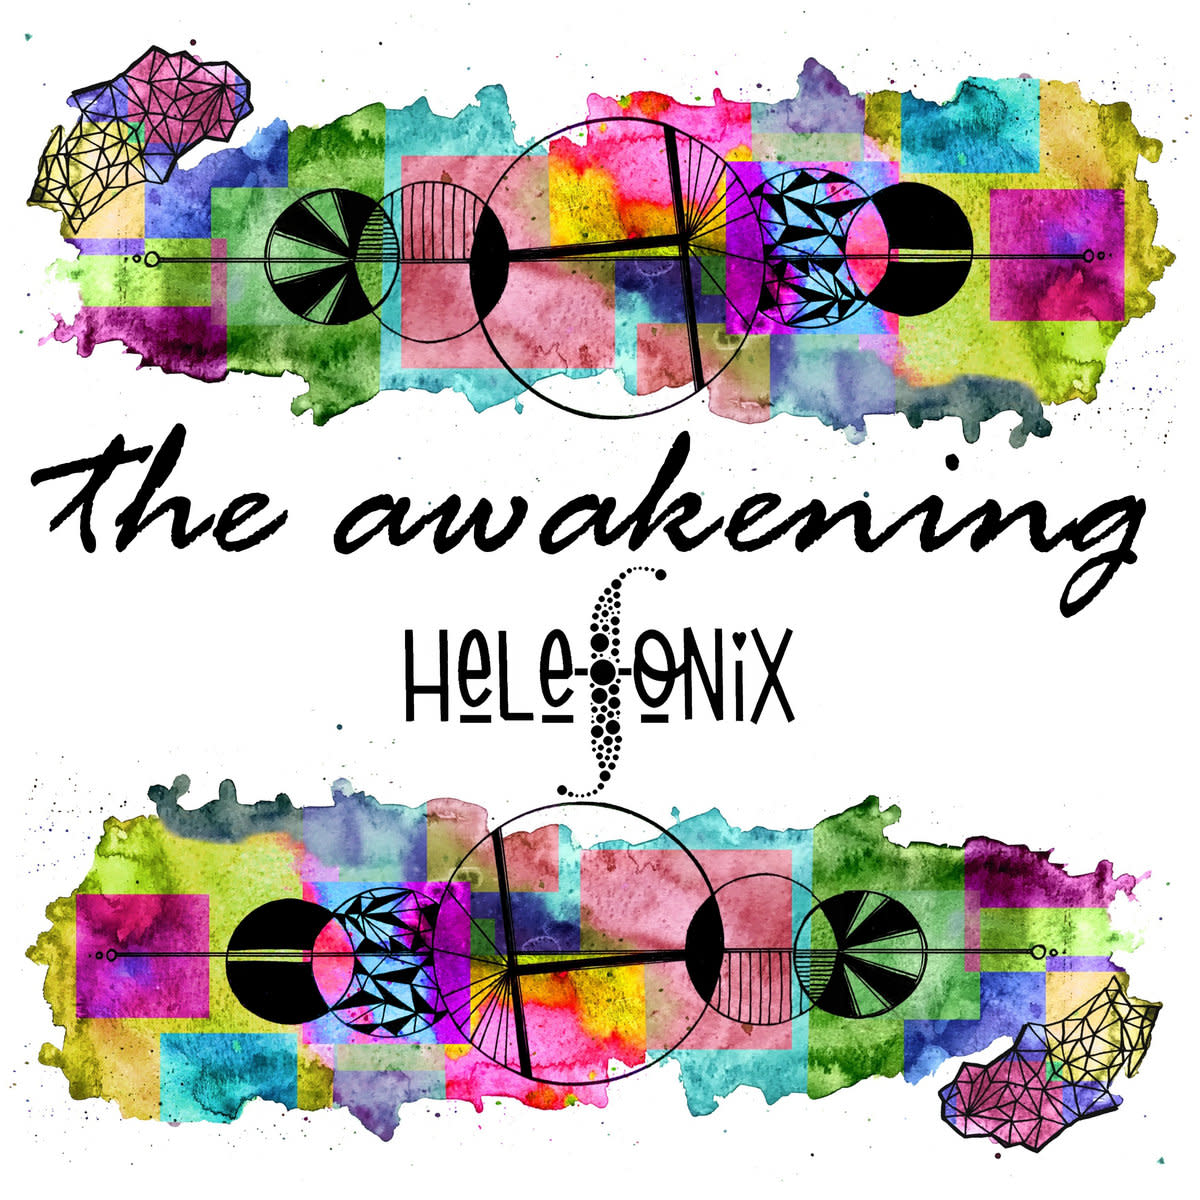 electronic-music-album-the-awakening-by-helefonix